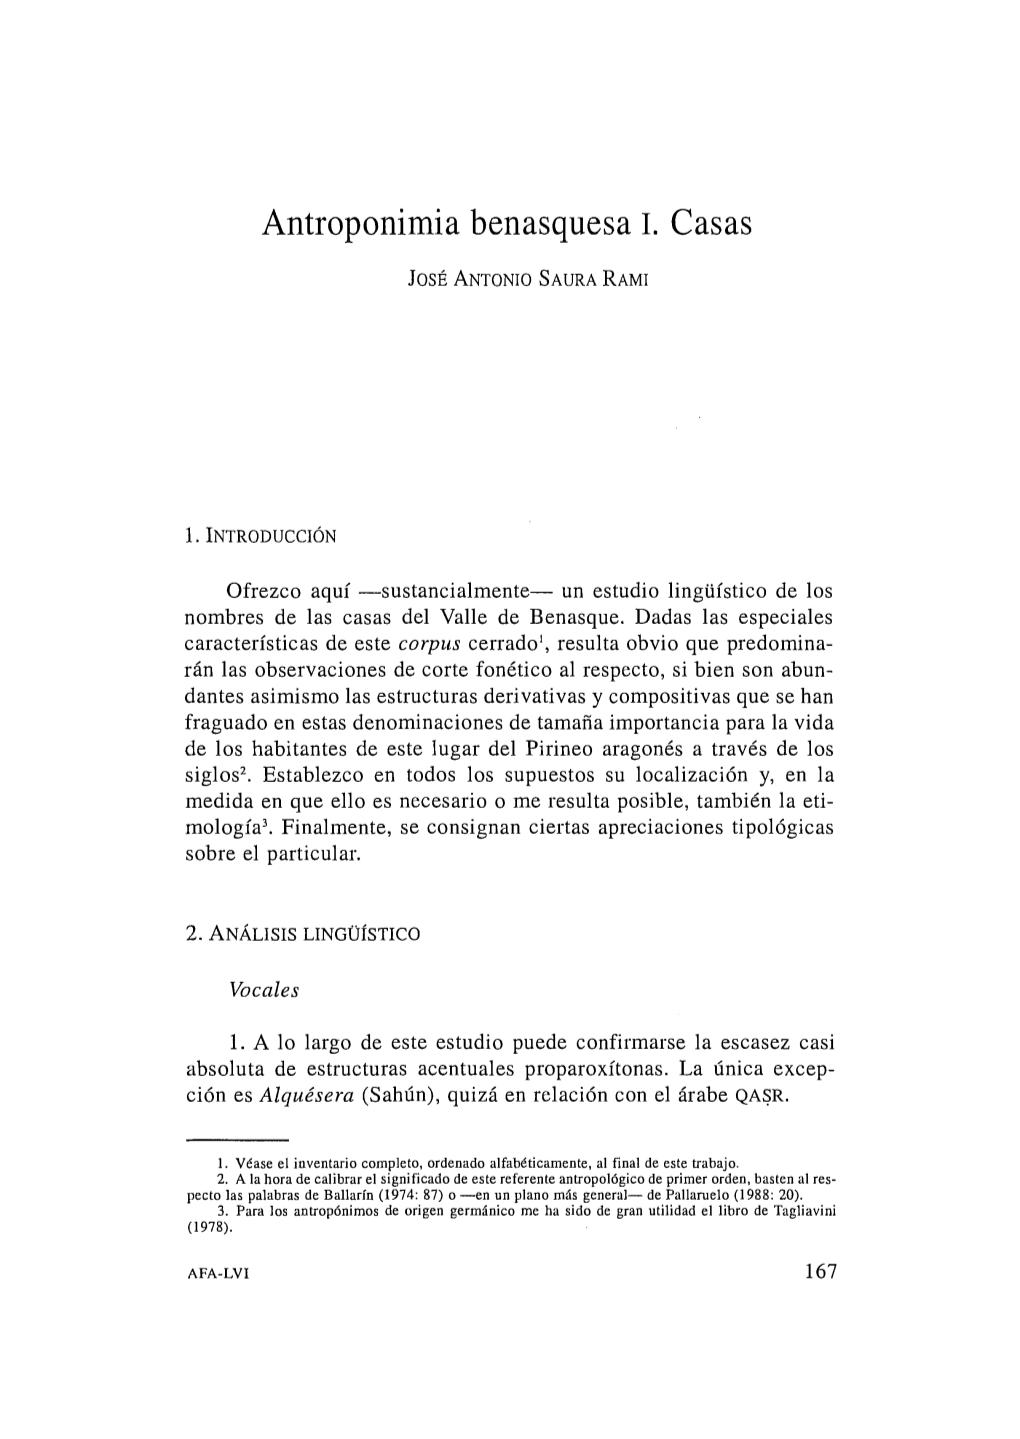 11. Antroponimia Benasquesa. I. Casas, Por José Antonio Saura